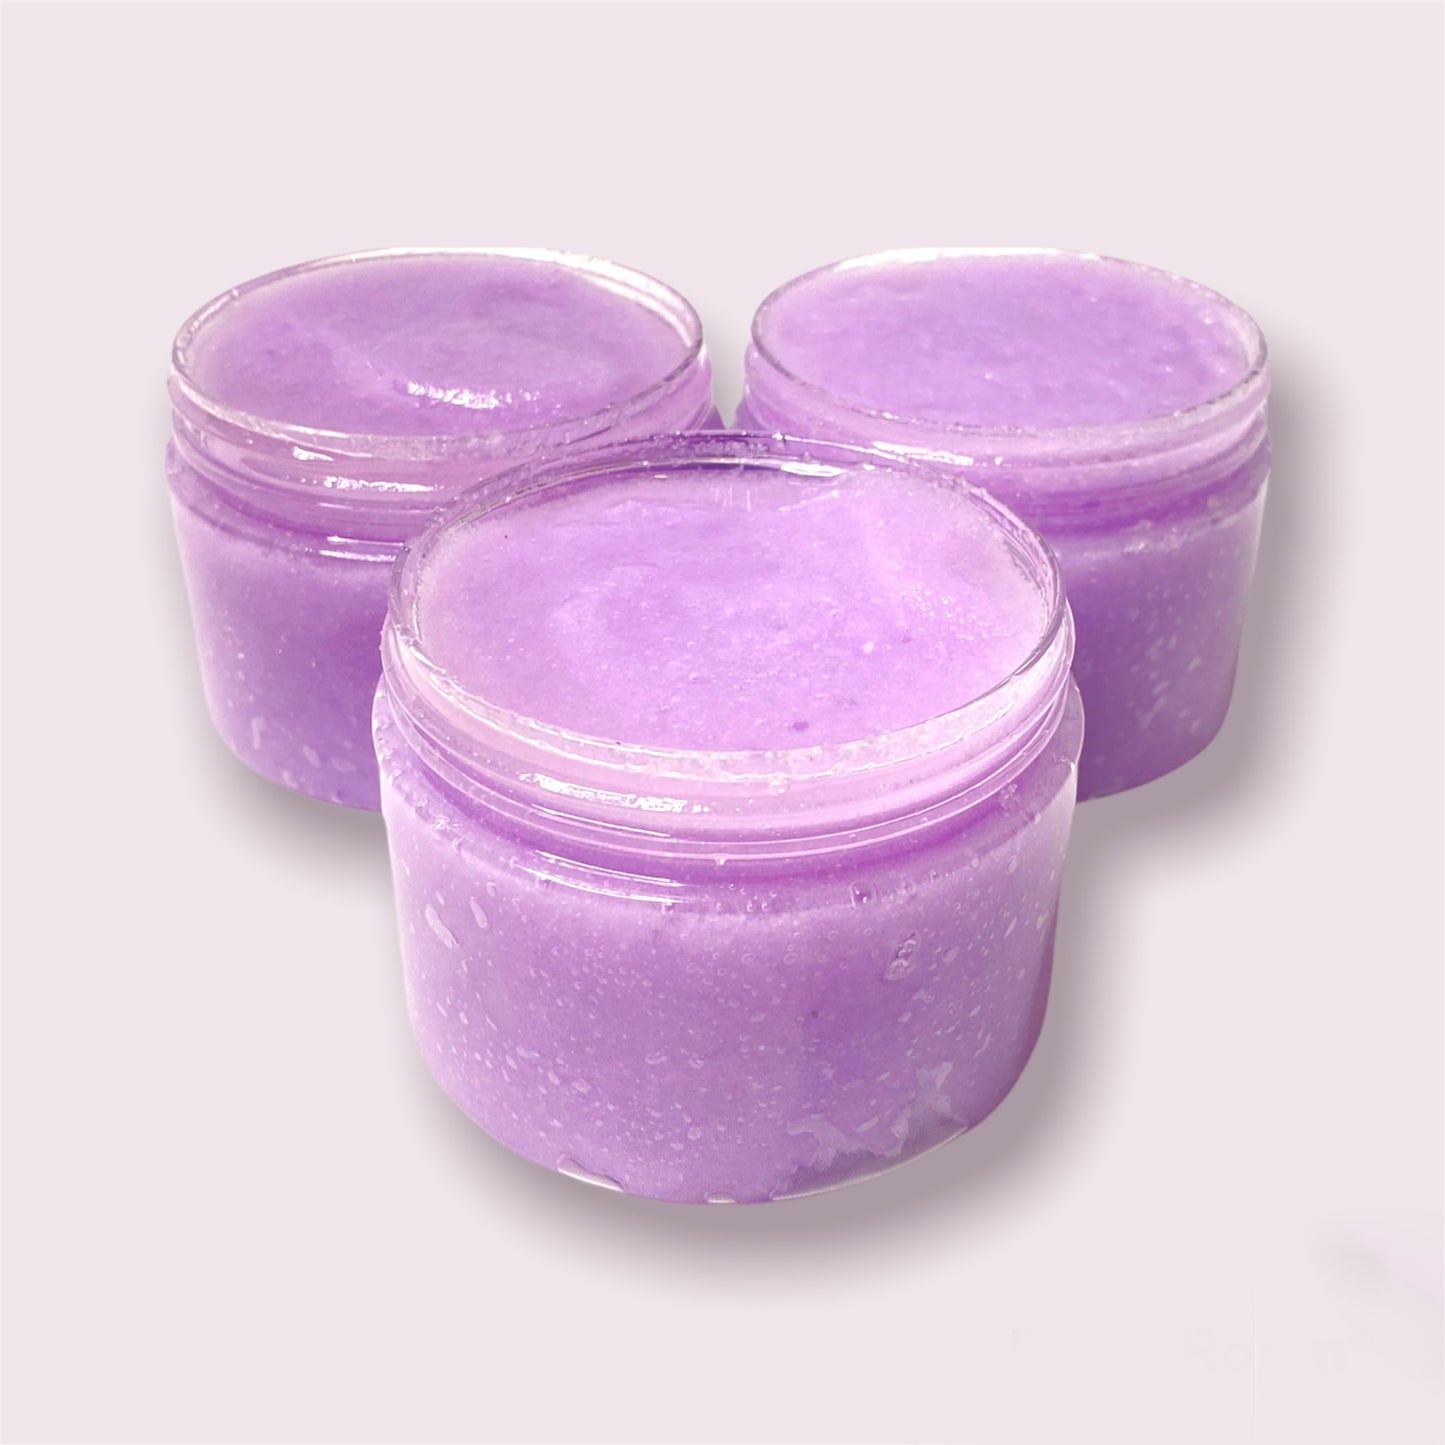 Lavender Hand & Body Sugar Scrub